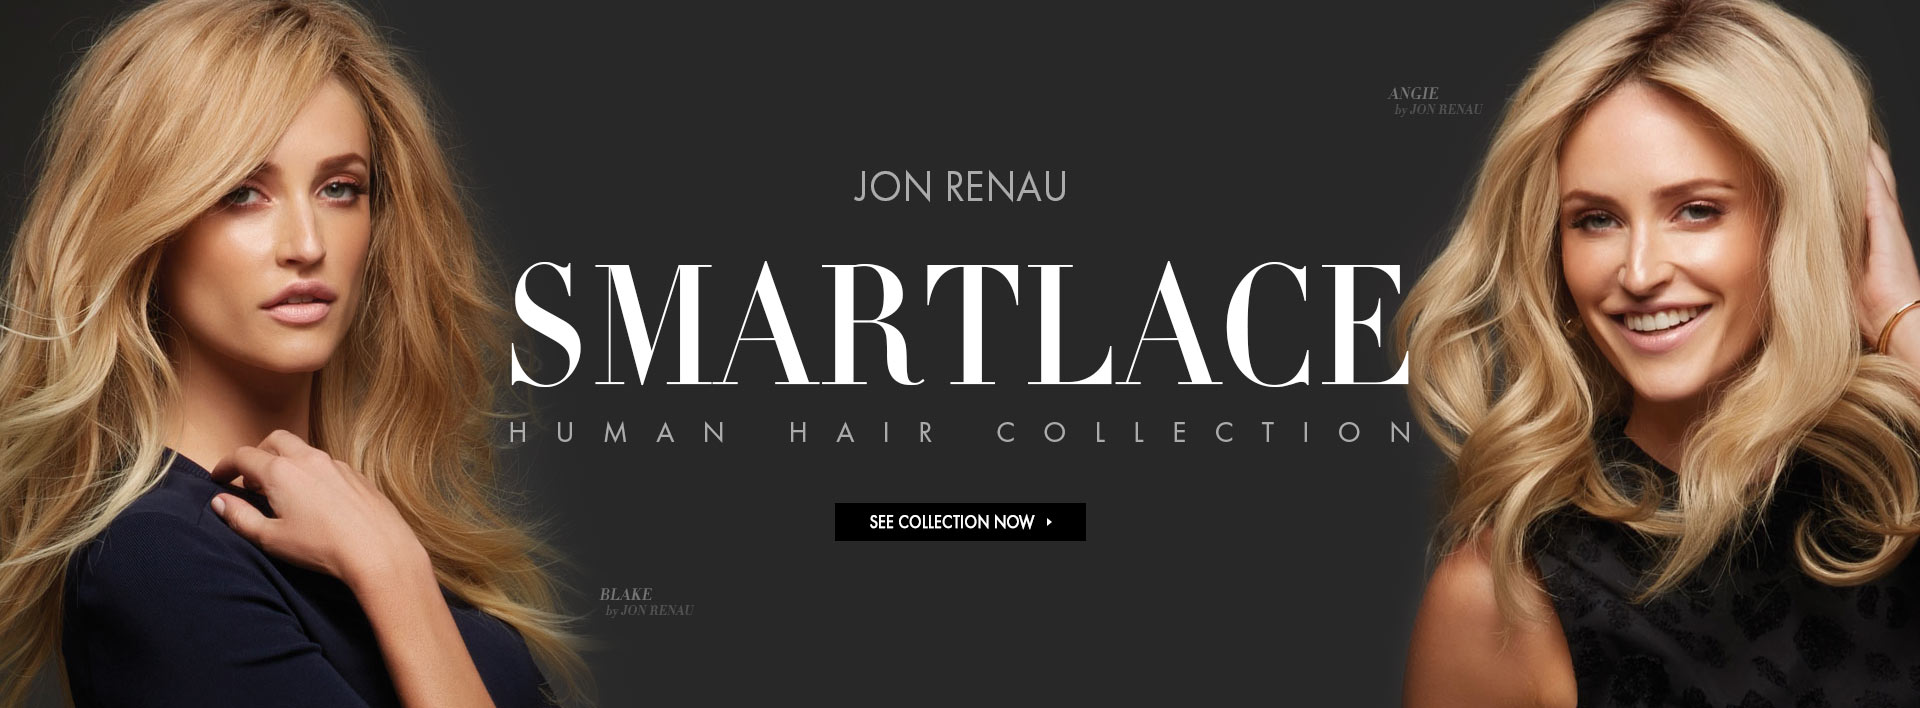 Jon Renau SmartLace Human Hair Collection